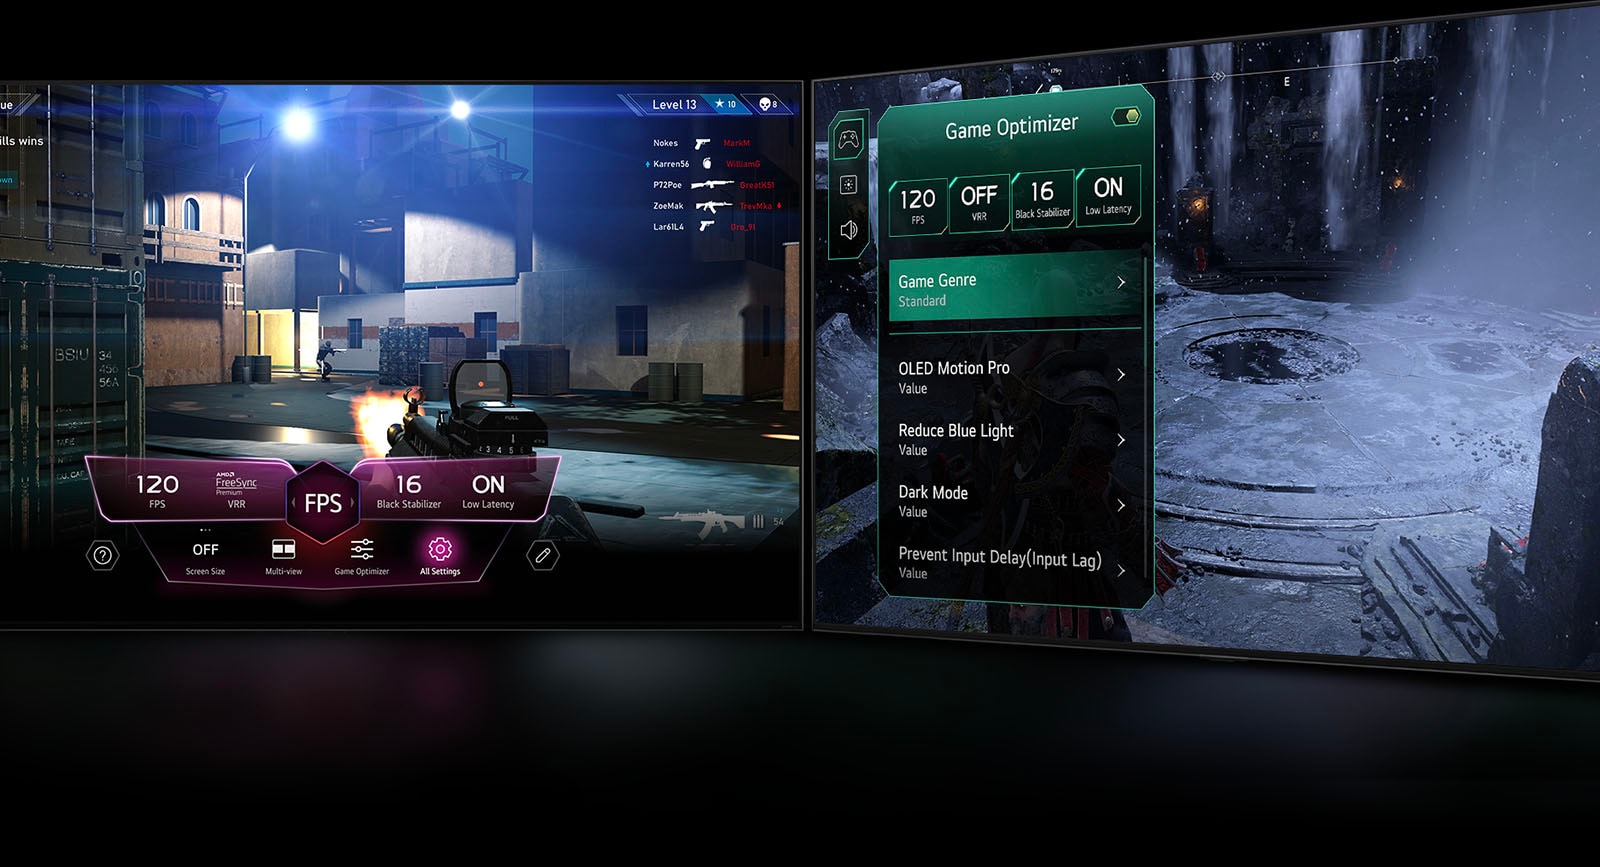 Scena z gry FPS z pulpitem gry, pojawiającym się nad ekranem podczas rozgrywki. Ciemna, zimowa scena z menu Game Optimizer pojawiającym się nad grą. 